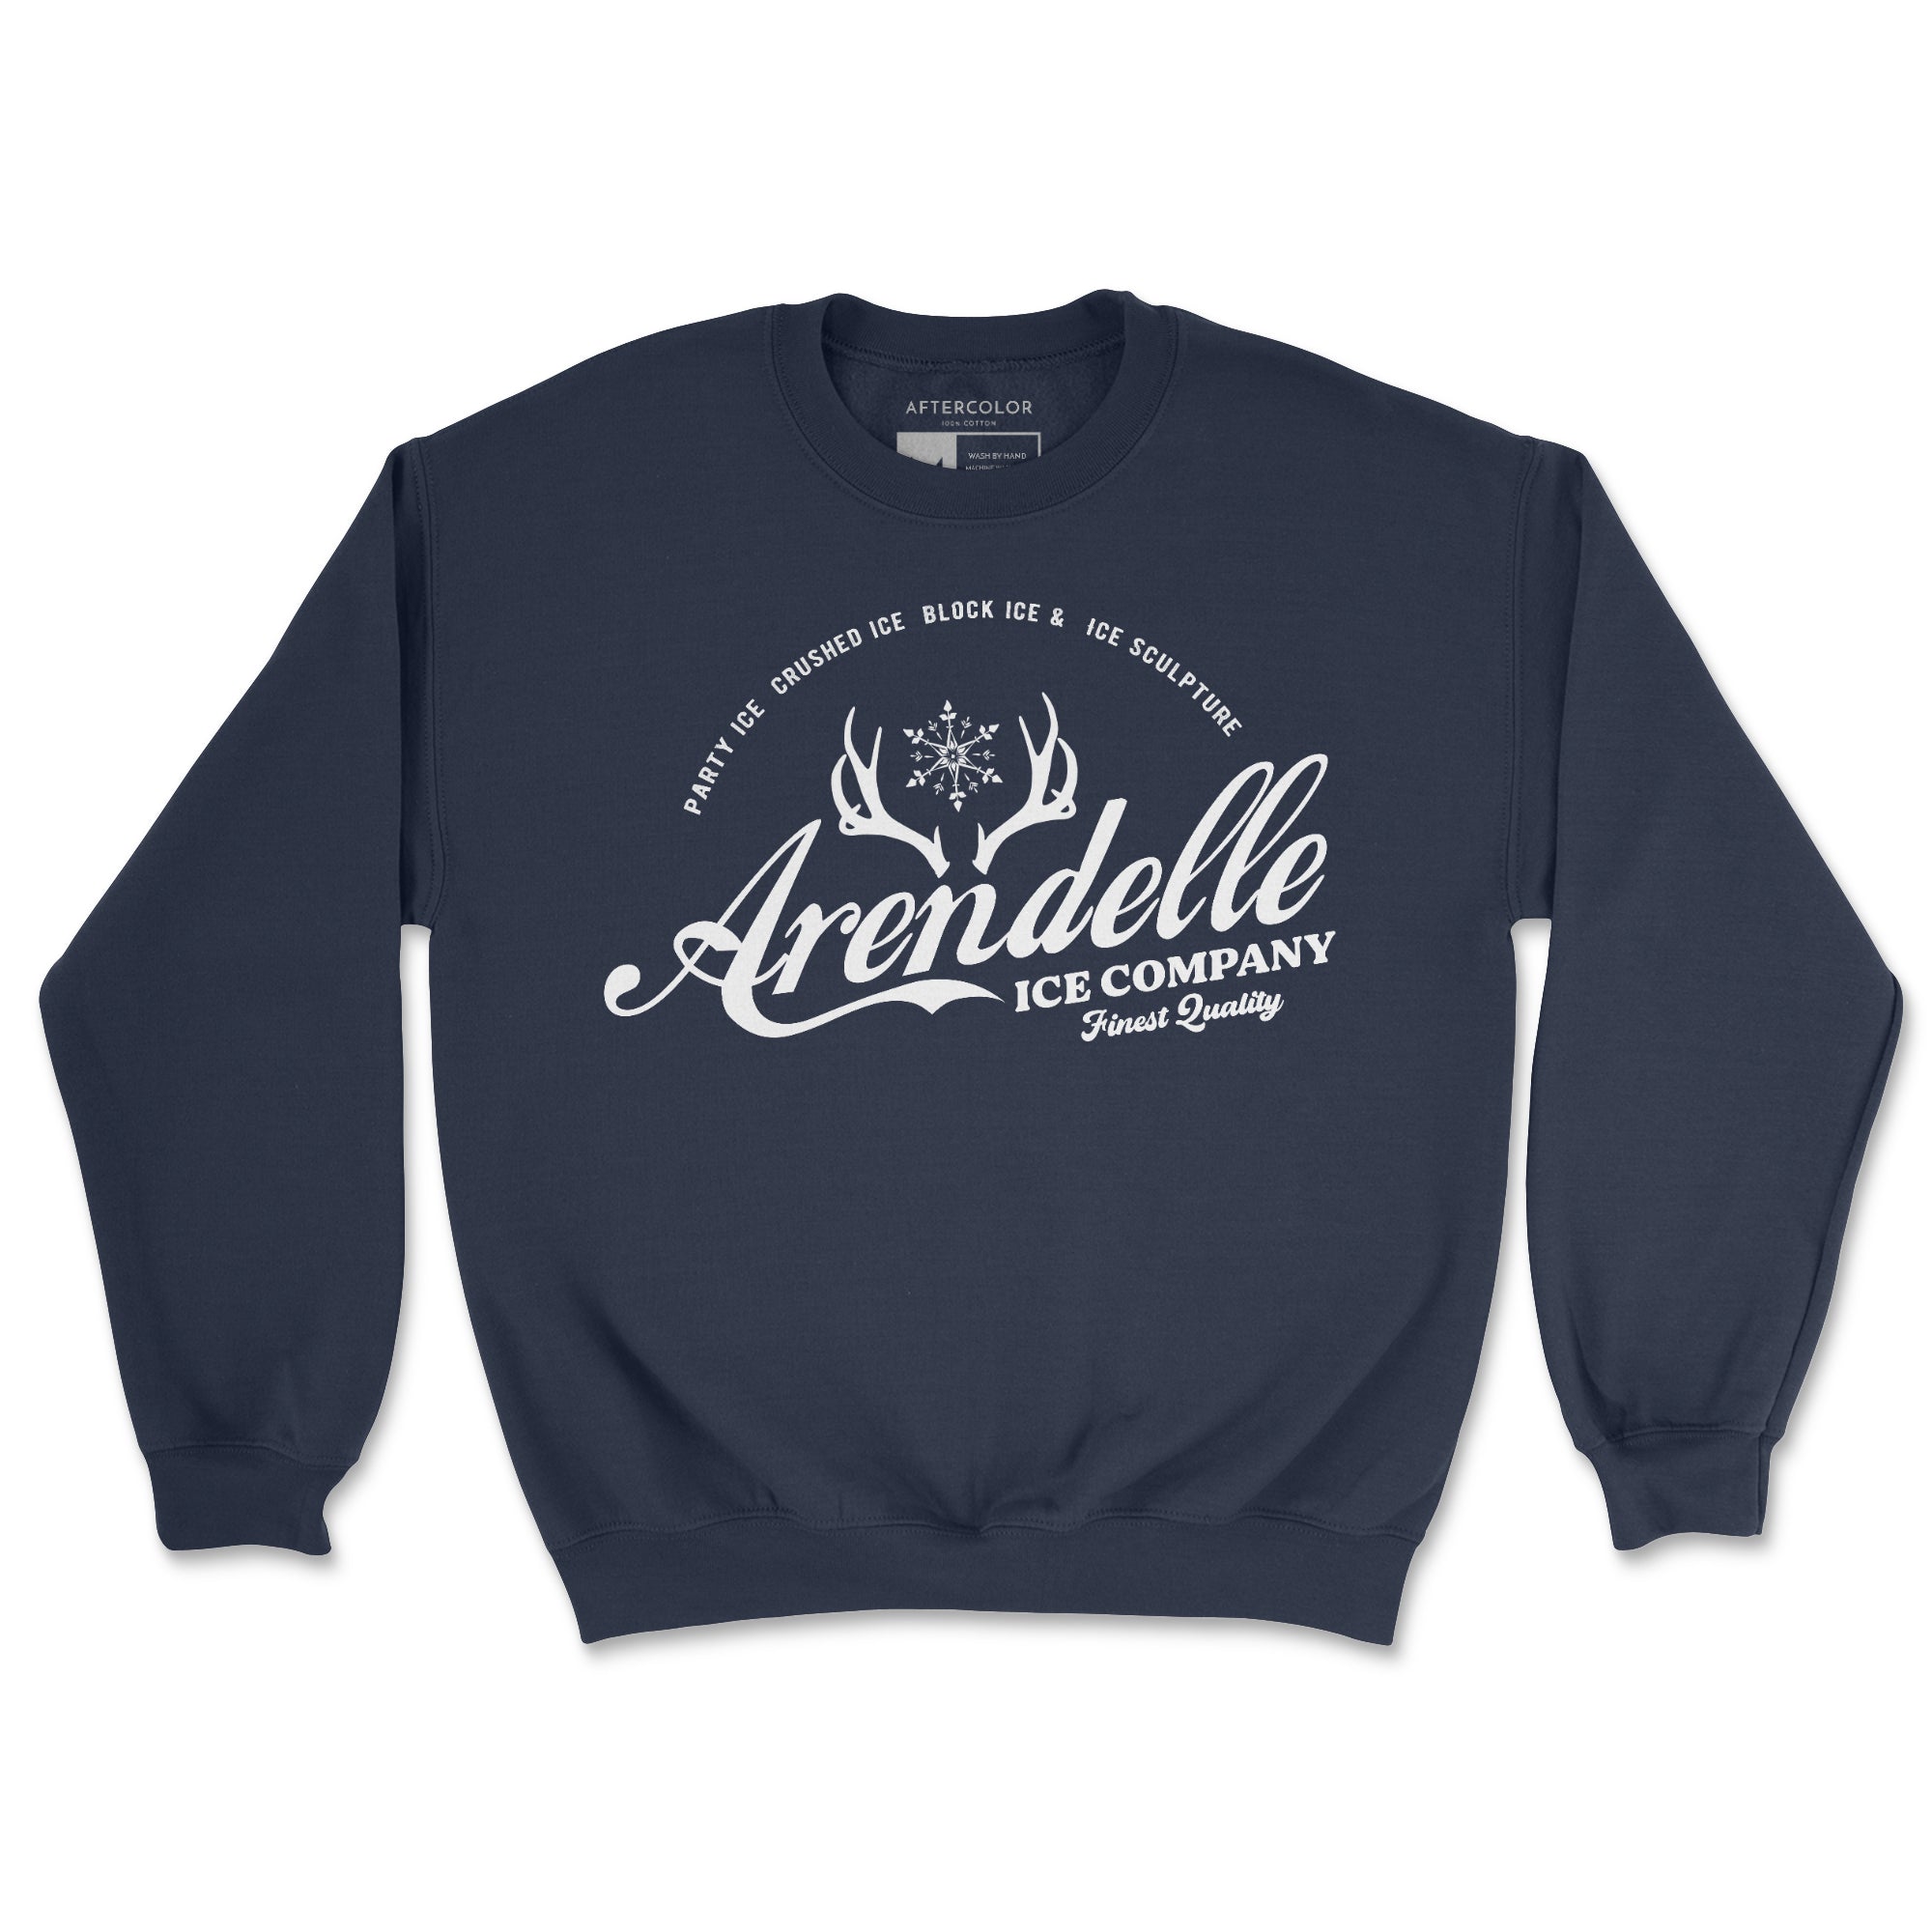 Arendelle Ice Company Graphic Sweatshirt